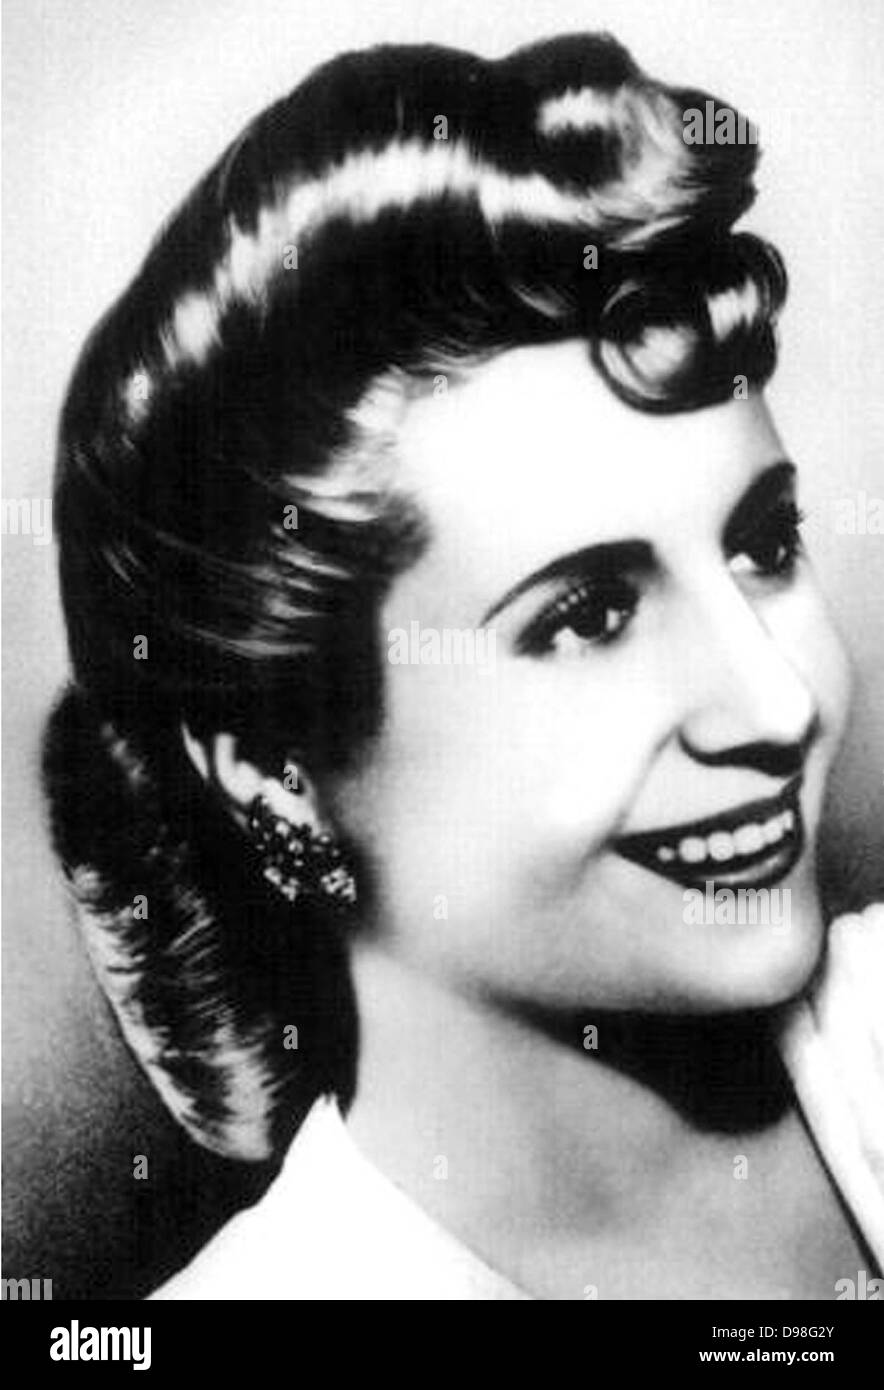 María Eva Duarte de Perón 7 Maggio 1919 - 26 luglio 1952, fu la seconda moglie del presidente Juan Perón (1895-1974) e servita come la prima donna di Argentina dal 1946 fino alla sua morte nel 1952. Foto Stock